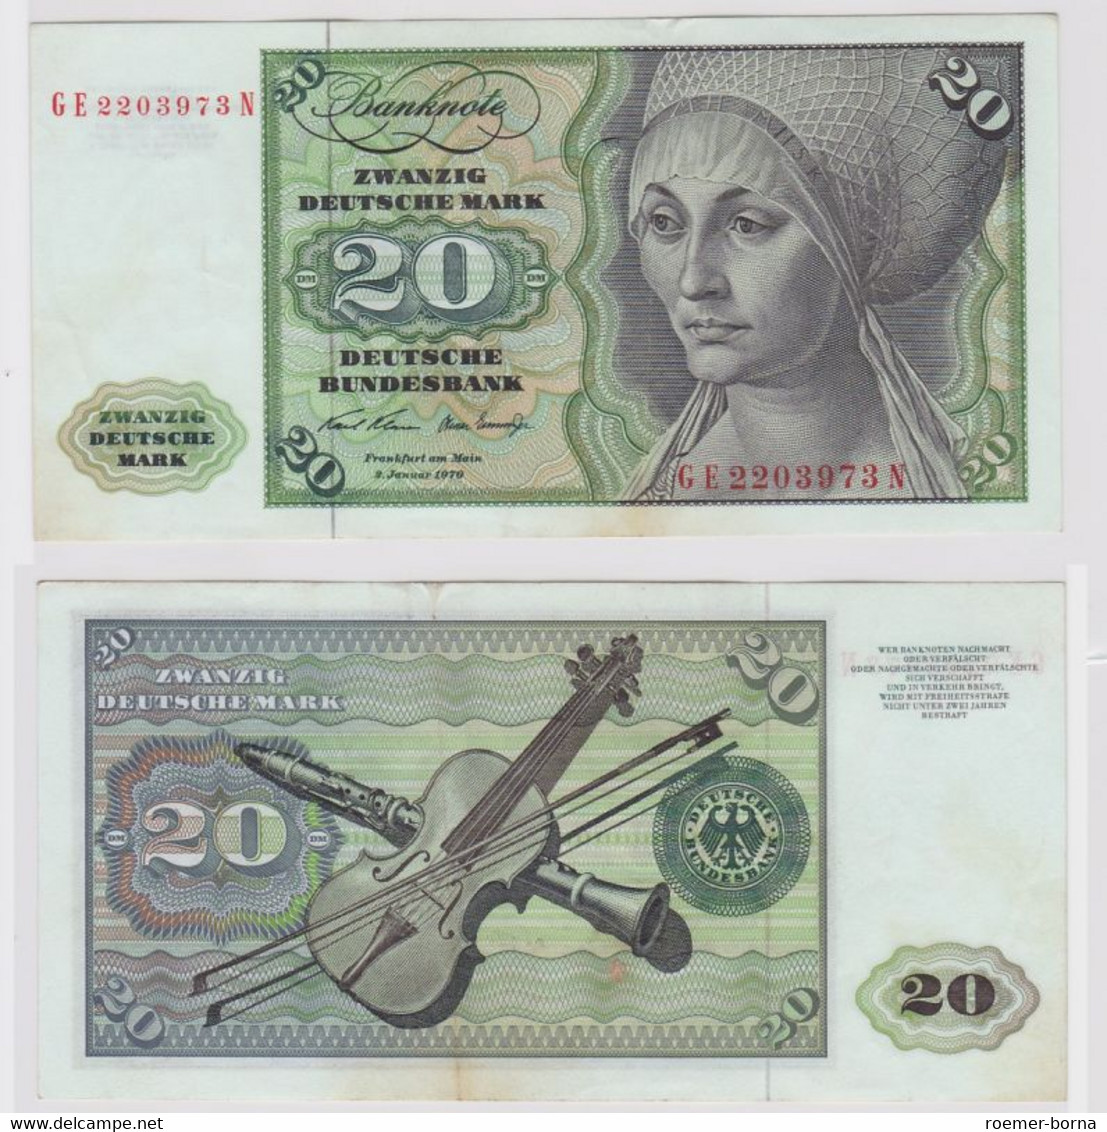 T148110 Banknote 20 DM Deutsche Mark Ro. 271b Schein 2.Jan. 1970 KN GE 2203973 N - 20 Deutsche Mark